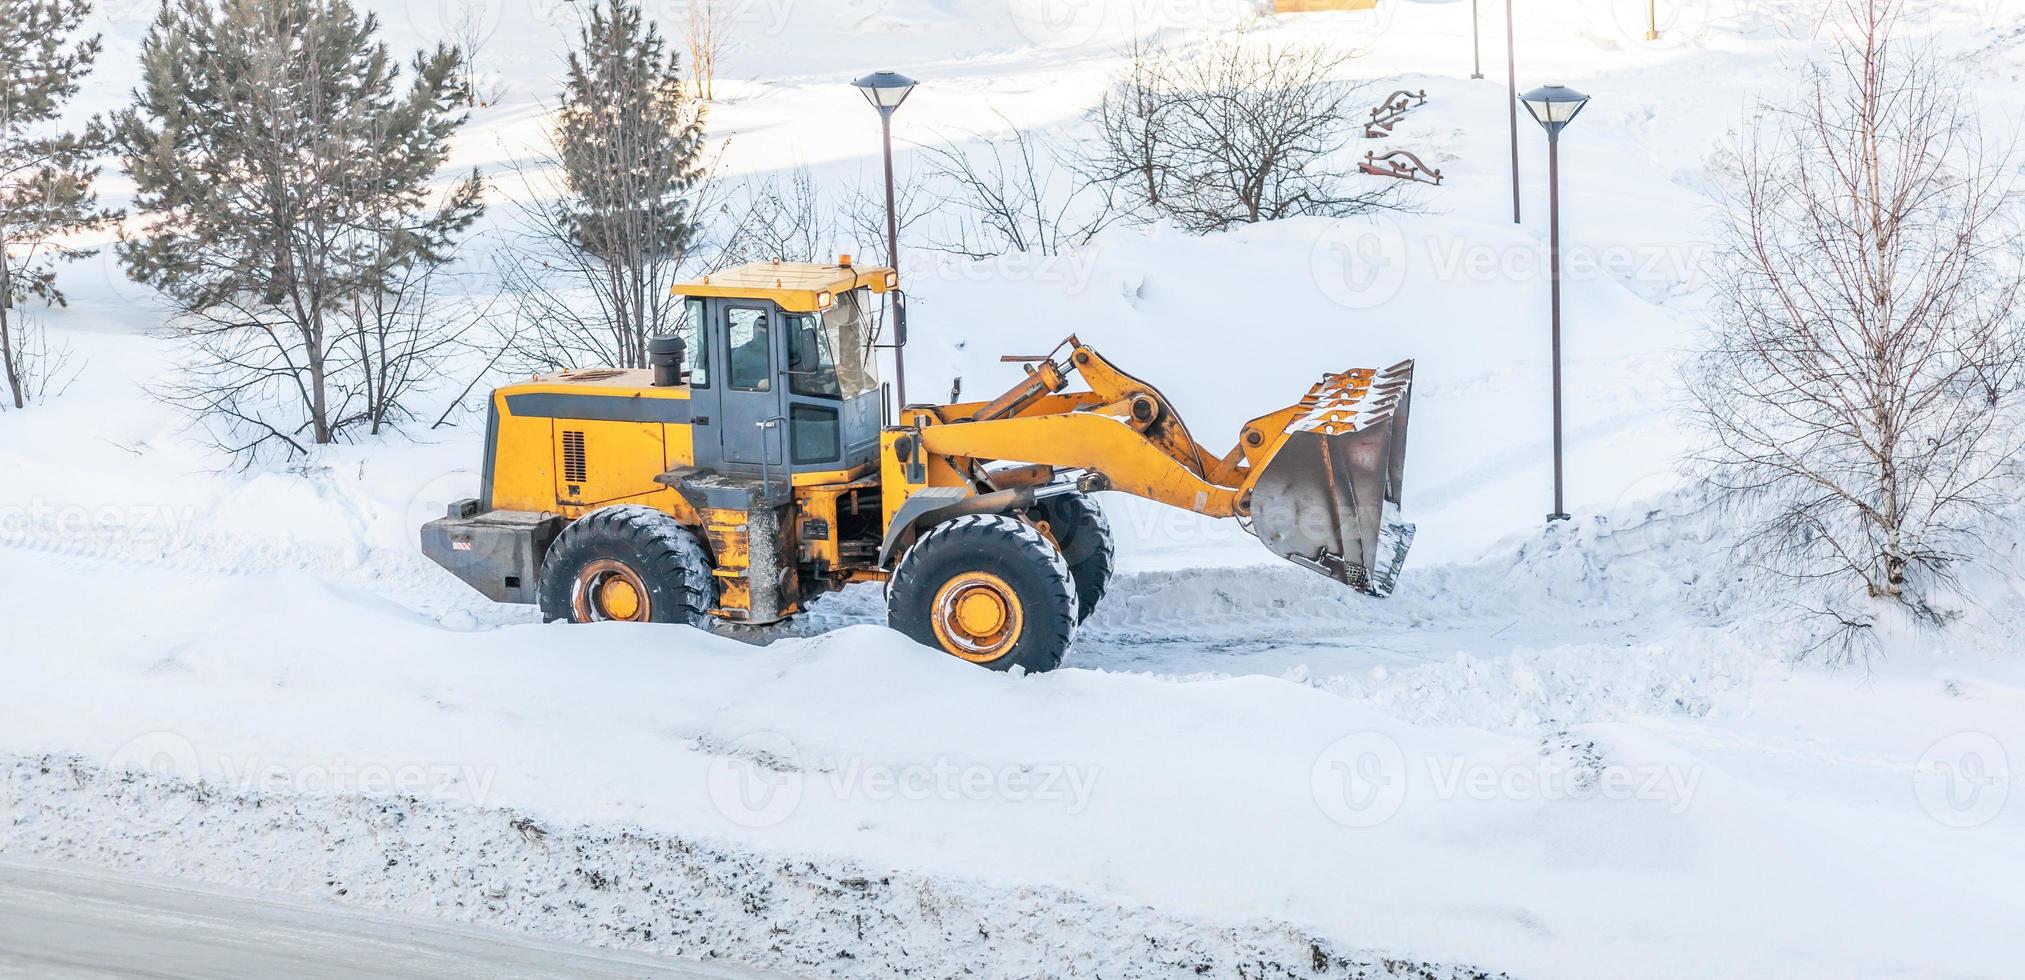 limpeza de neve. trator abre caminho após forte nevasca. um grande trator laranja remove a neve da estrada e limpa a calçada. limpando estradas na cidade da neve no inverno. foto